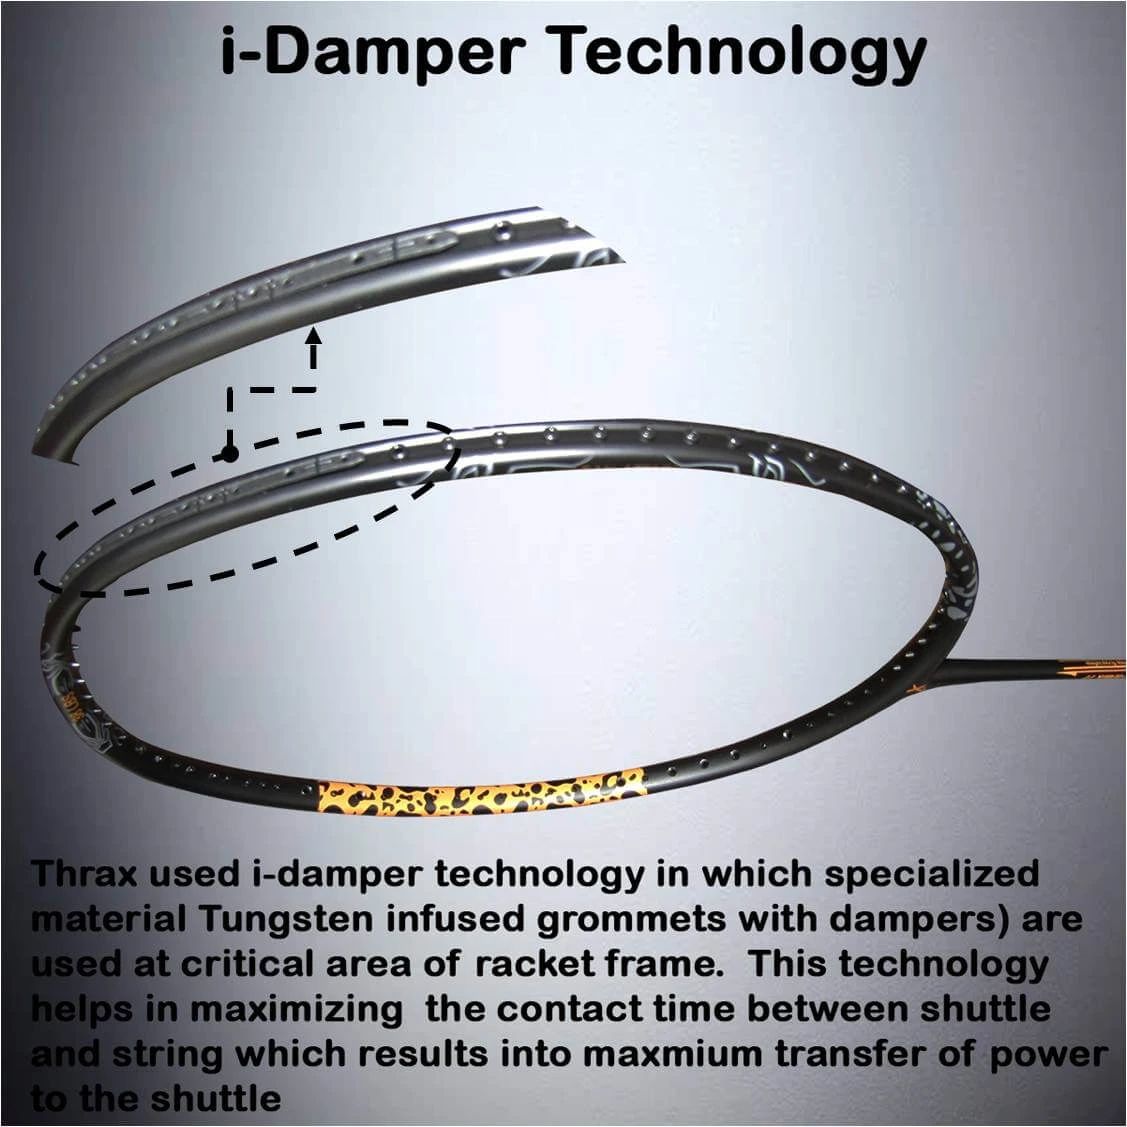 Thrax_C_Hawk_77_Badminton_Racket_iDamper_Technology